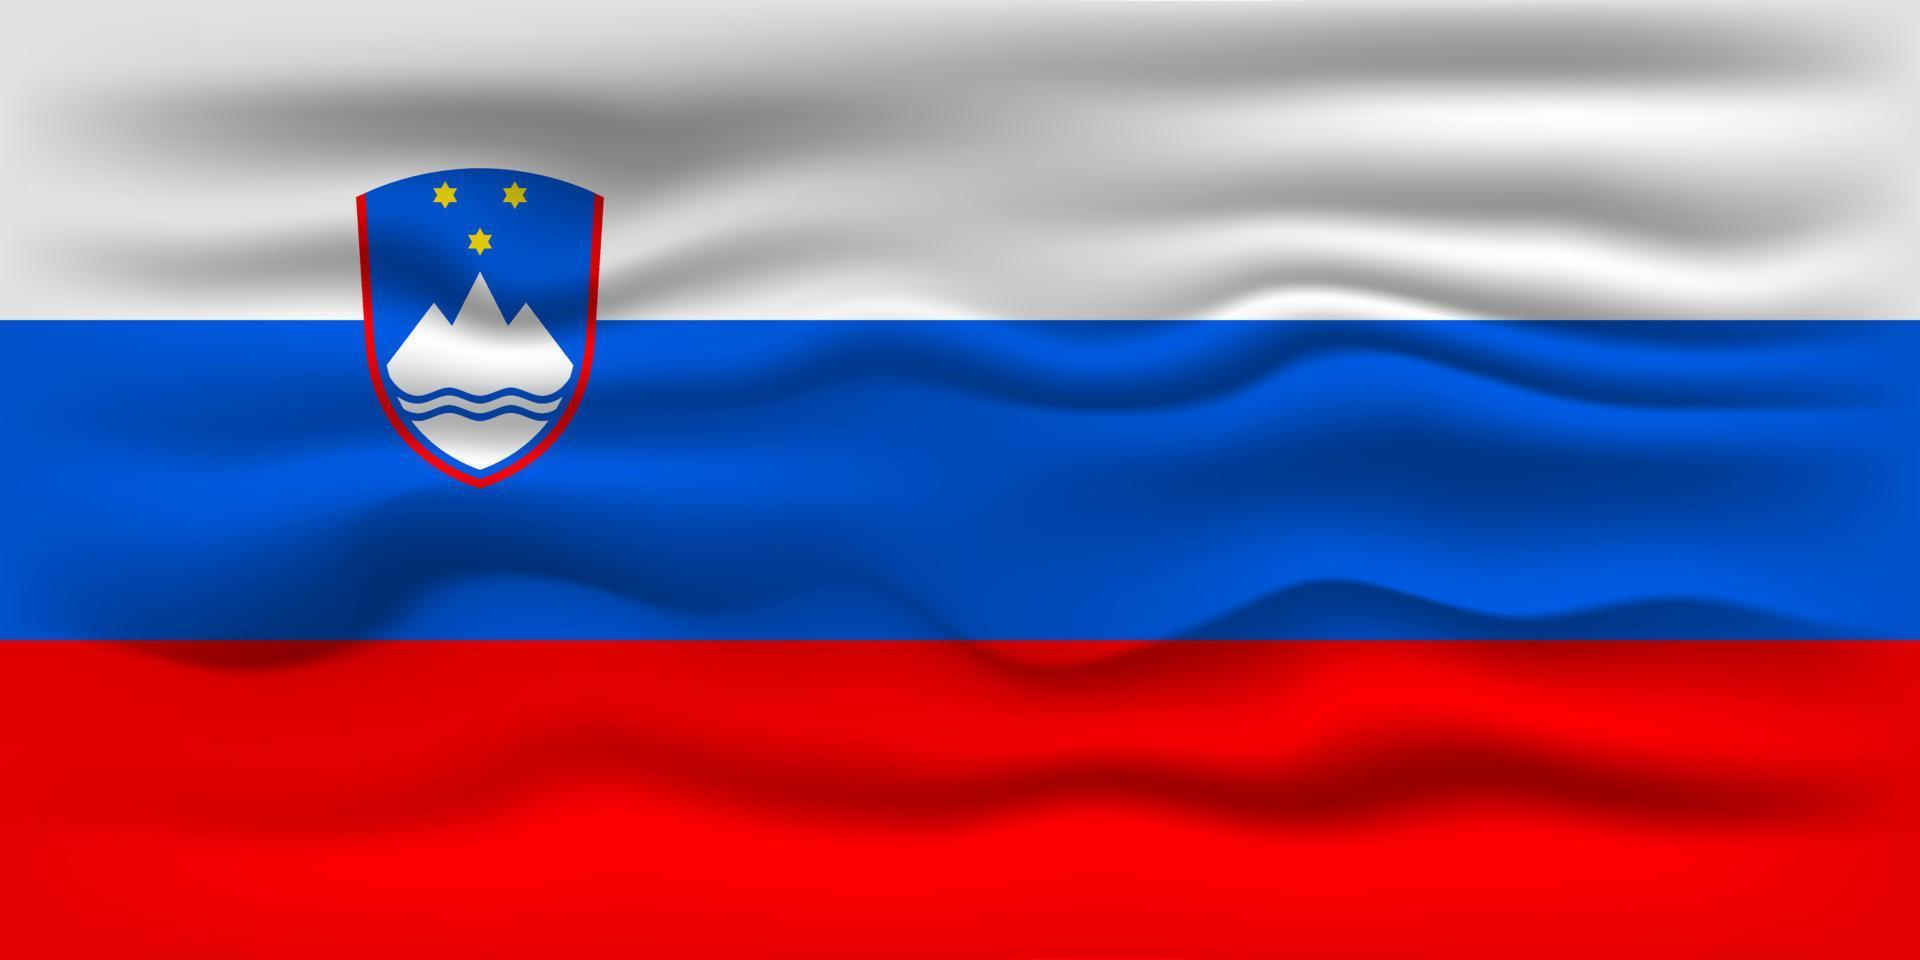 acenando a bandeira do país Eslovénia. ilustração vetorial. vetor